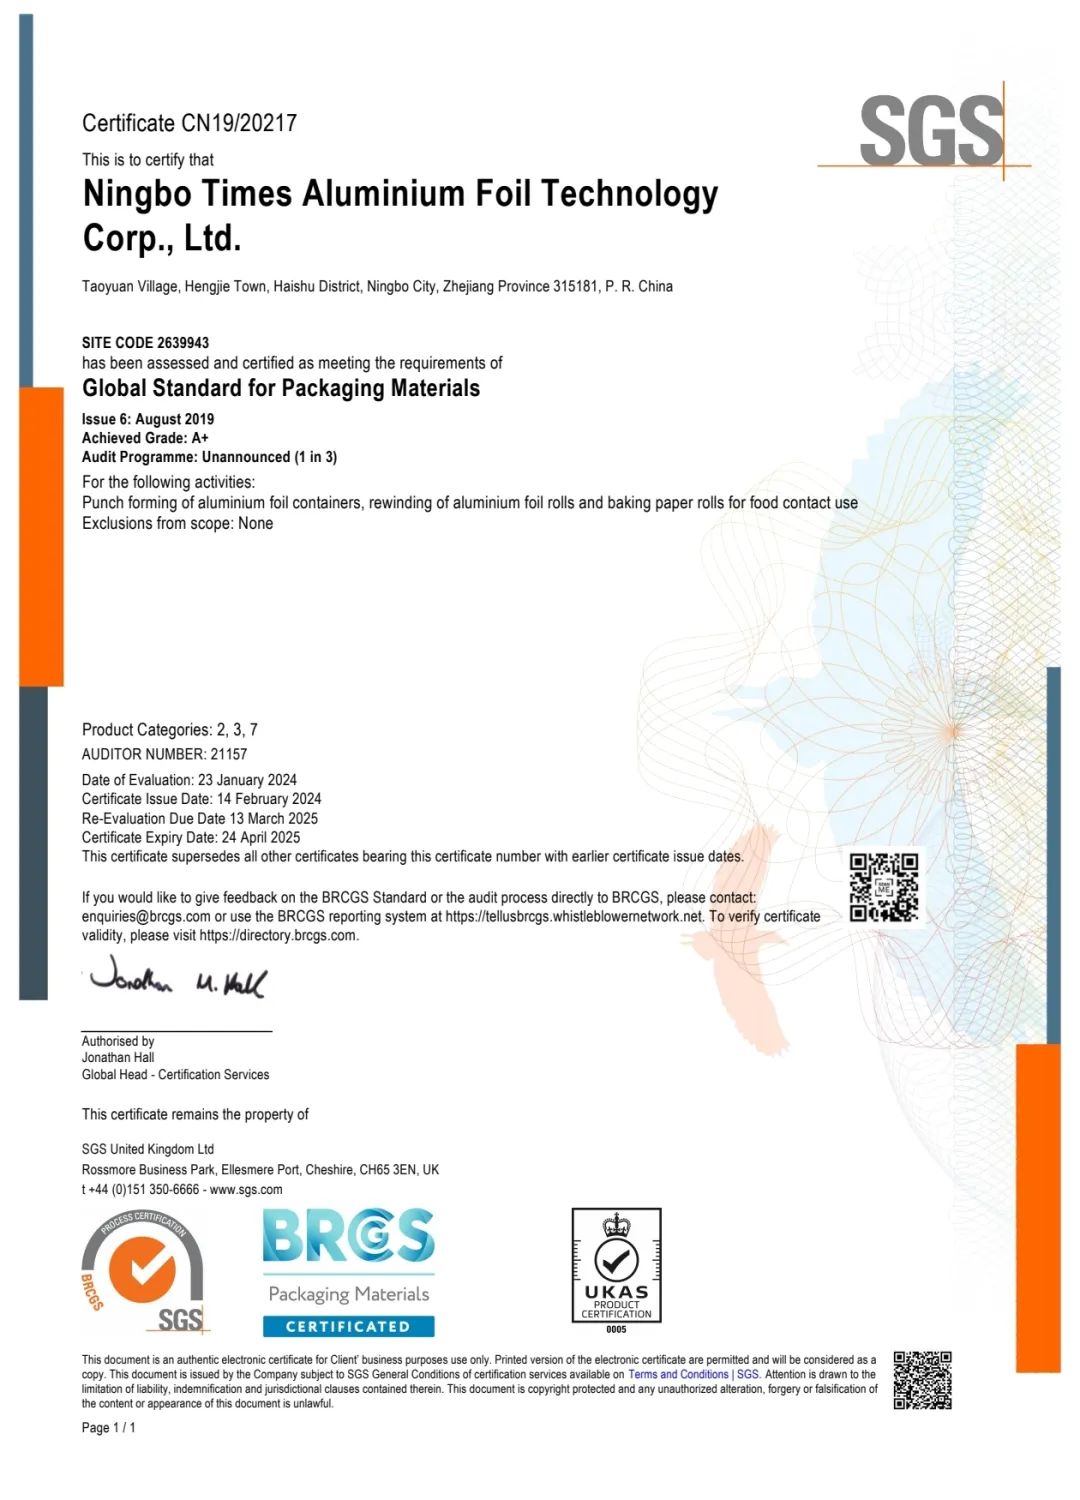 时代铝箔获BRCGS A+级认证